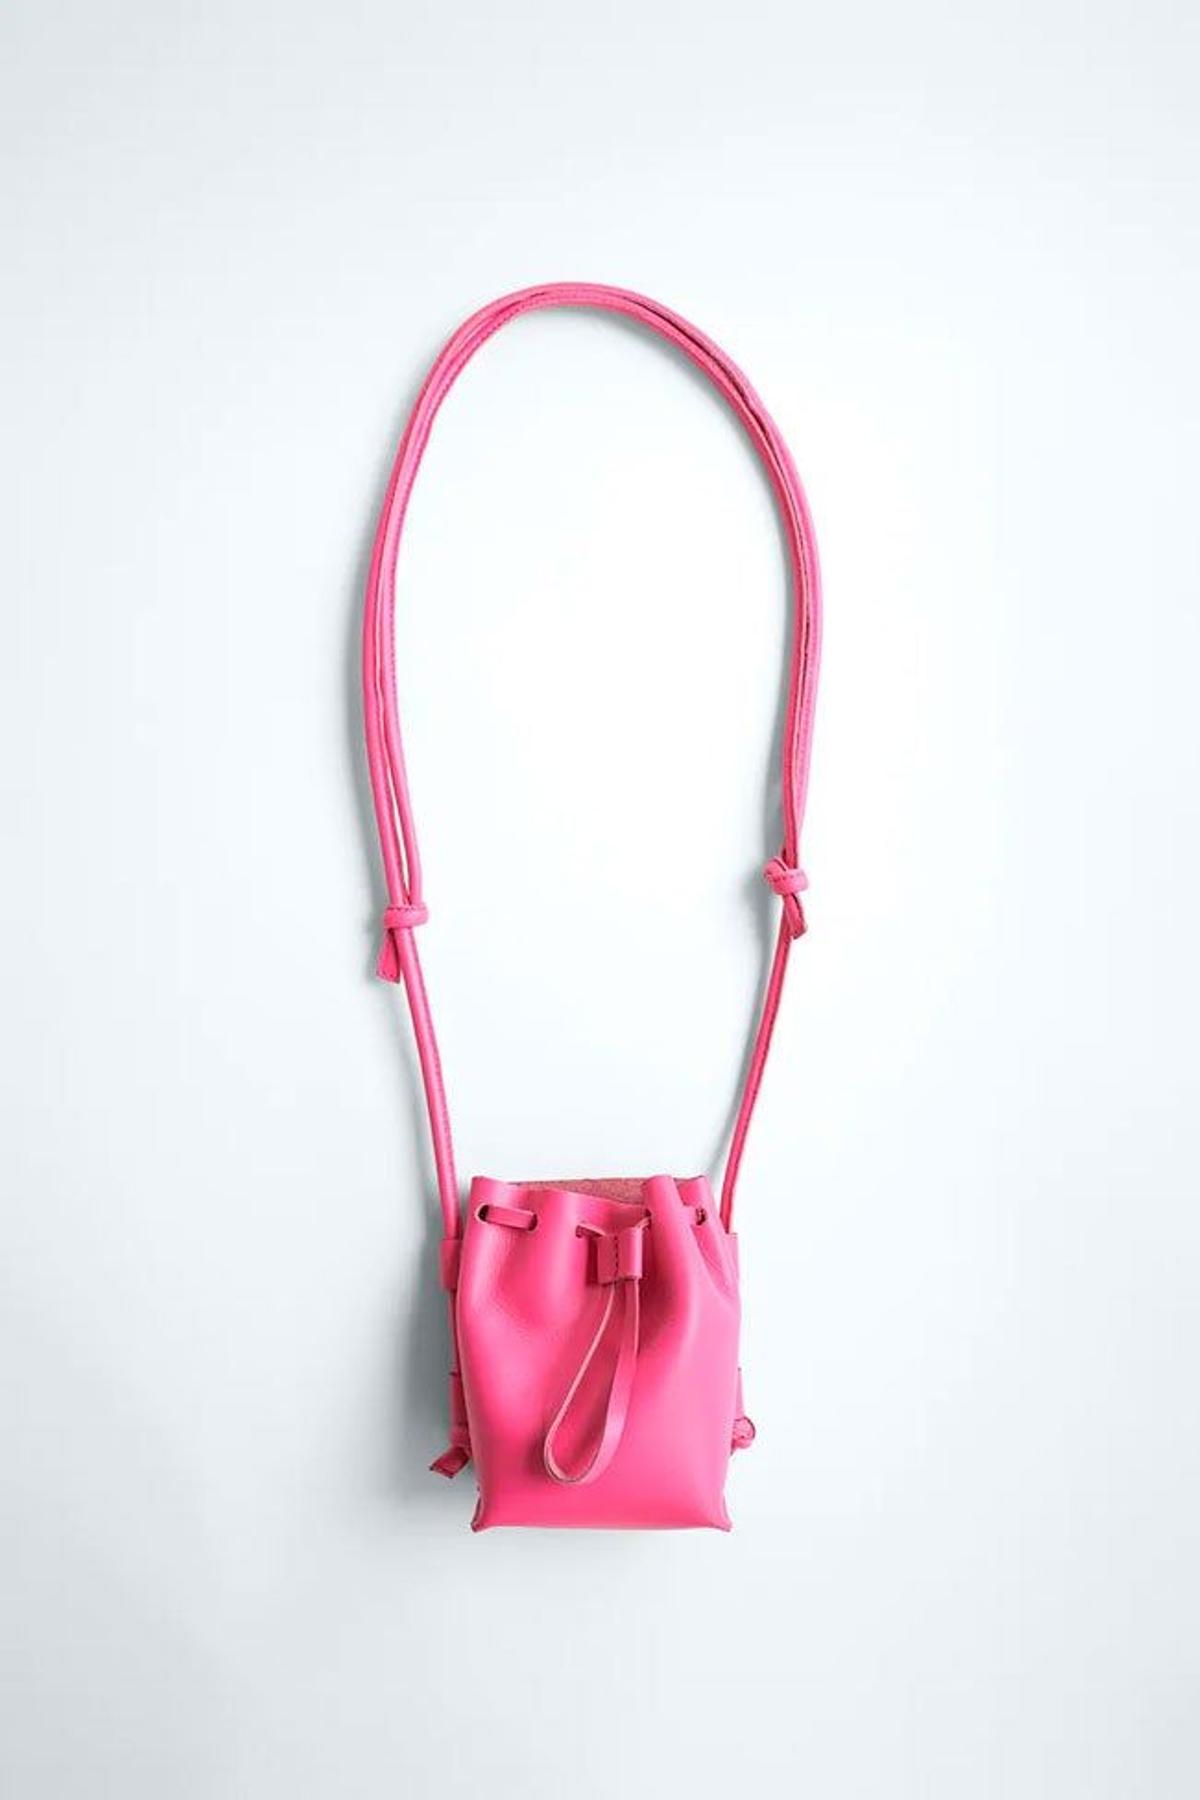 Mini bolso saca de piel fucsia de Zara. (Precio: 29,95 euros)